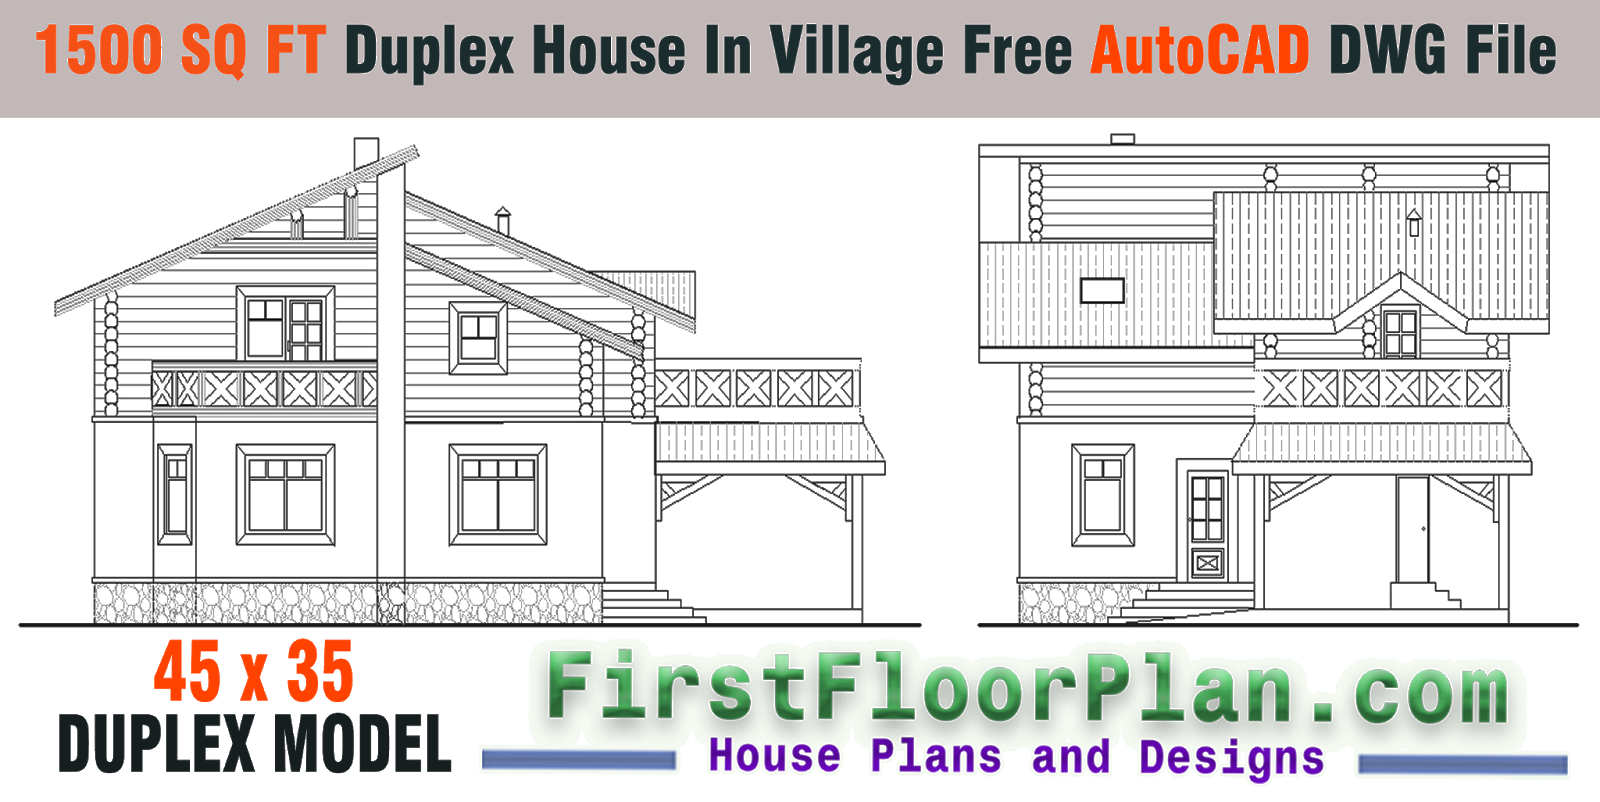  Duplex  House  Designs in Village 1500  Sq  Ft  Draw in 